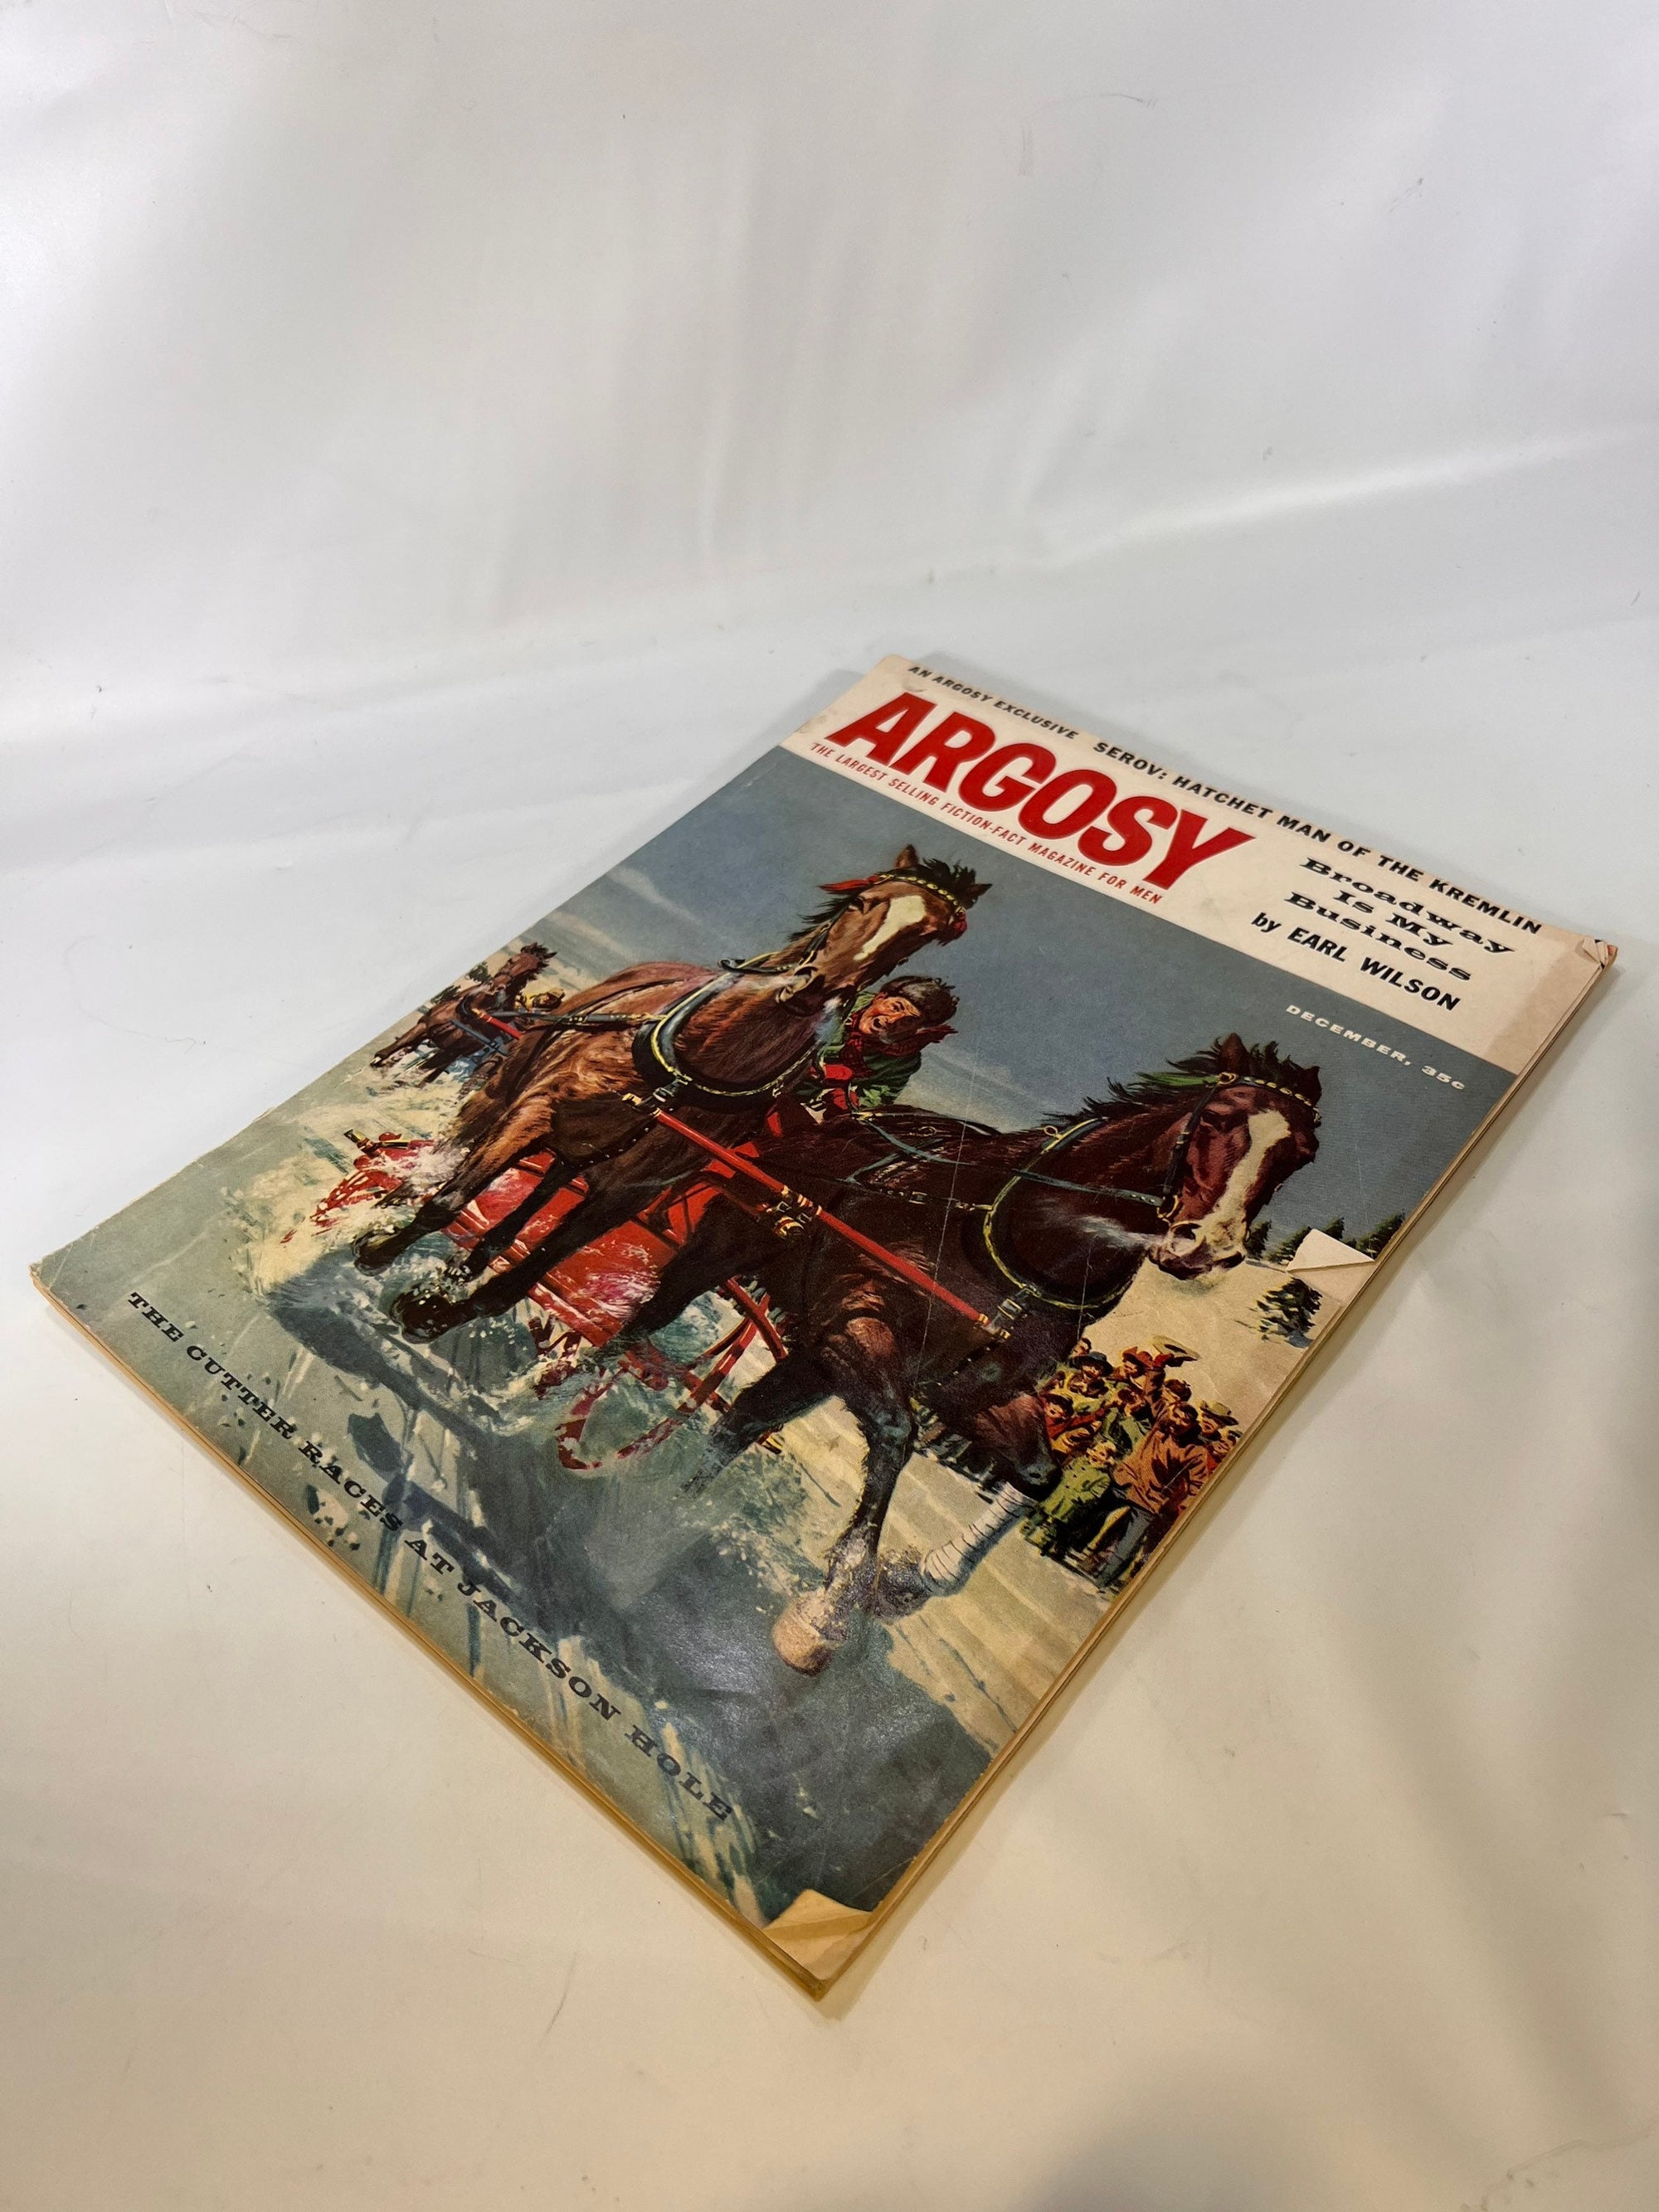 Argosy Fiction Fact Magazine for Men December 1957 Volume 345 Number 6